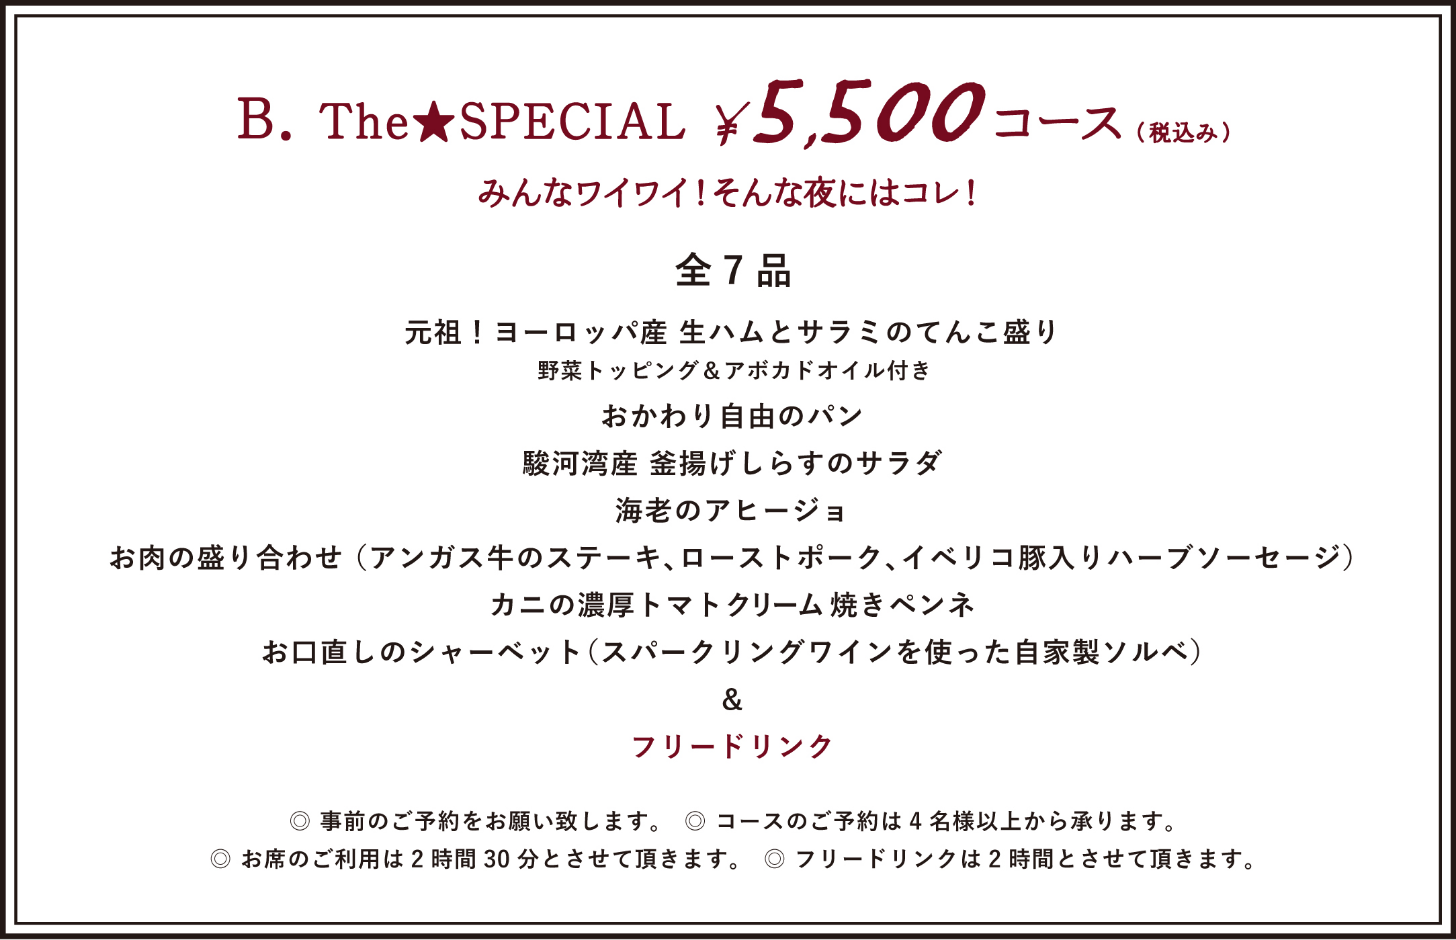 ¥5,500 COURSE